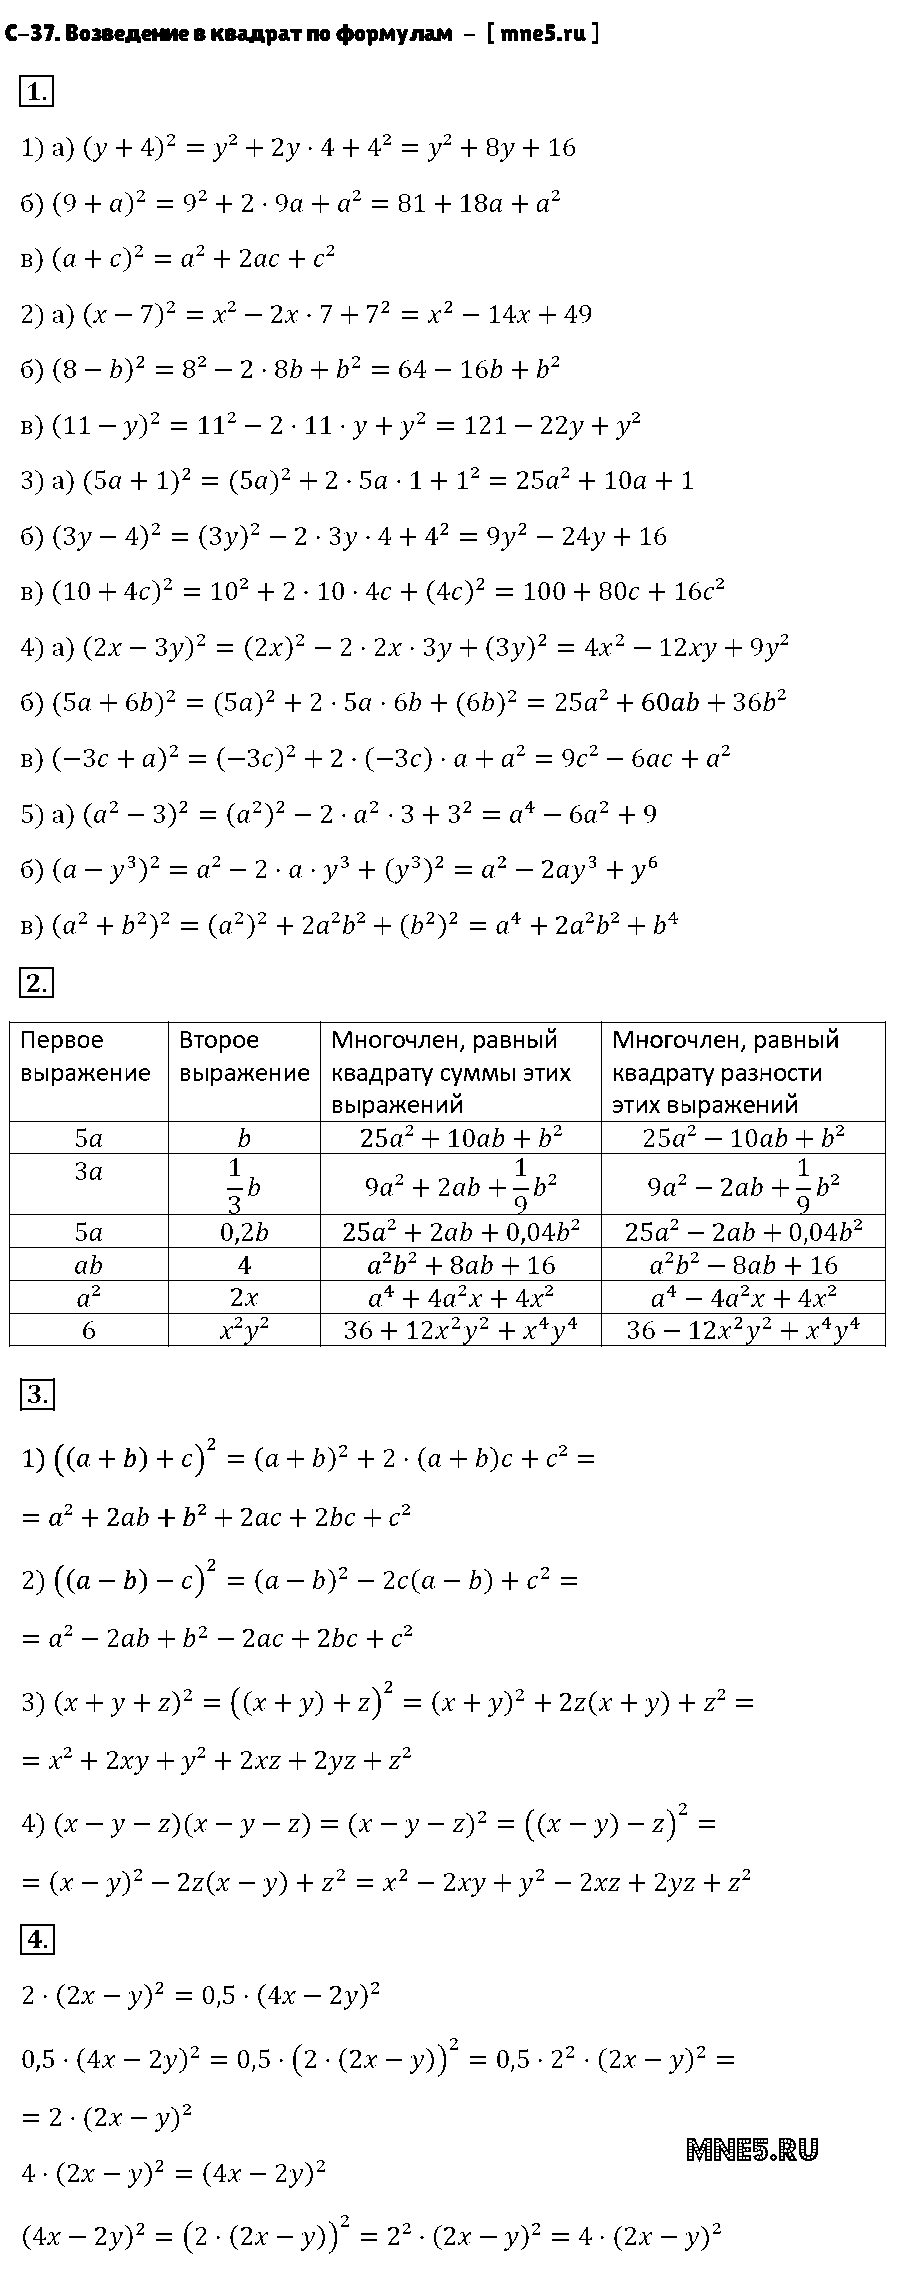 ГДЗ Алгебра 7 класс - С-37. Возведение в квадрат по формулам